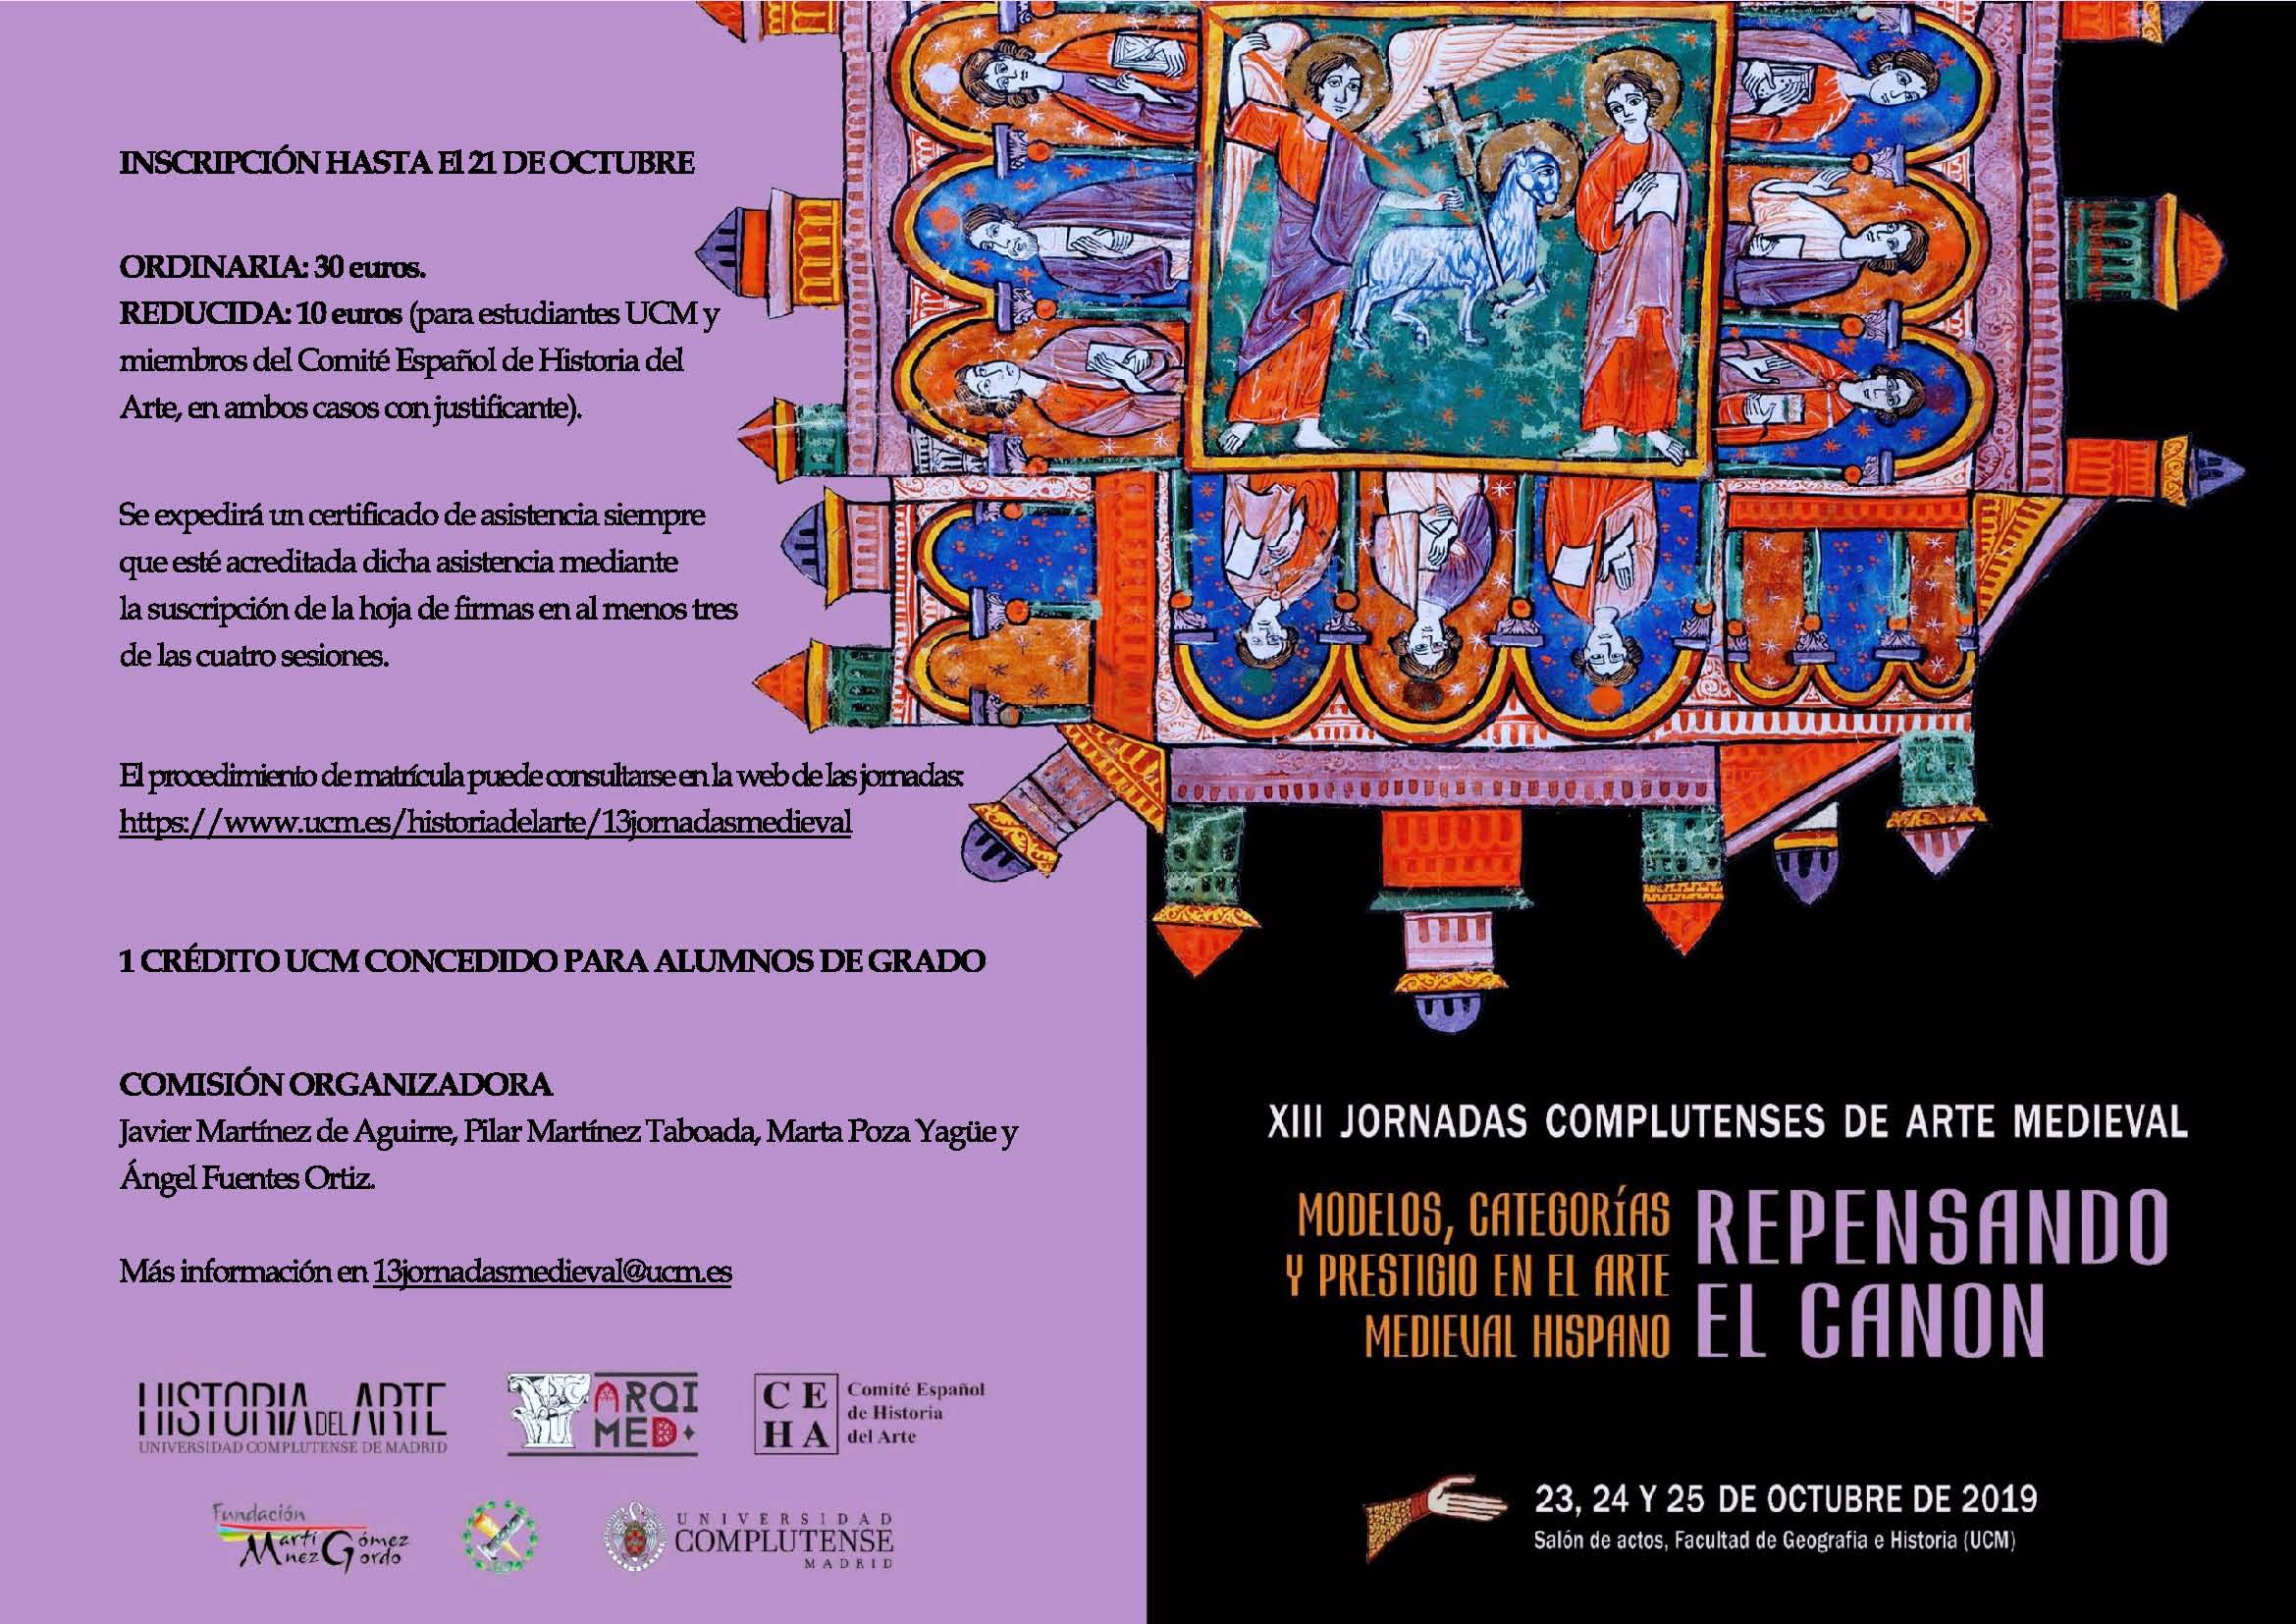 XIII Jornadas Complutenses de Arte Medieval: Repensando el canon: modelos, categorías y prestigio en el arte medieval hispano